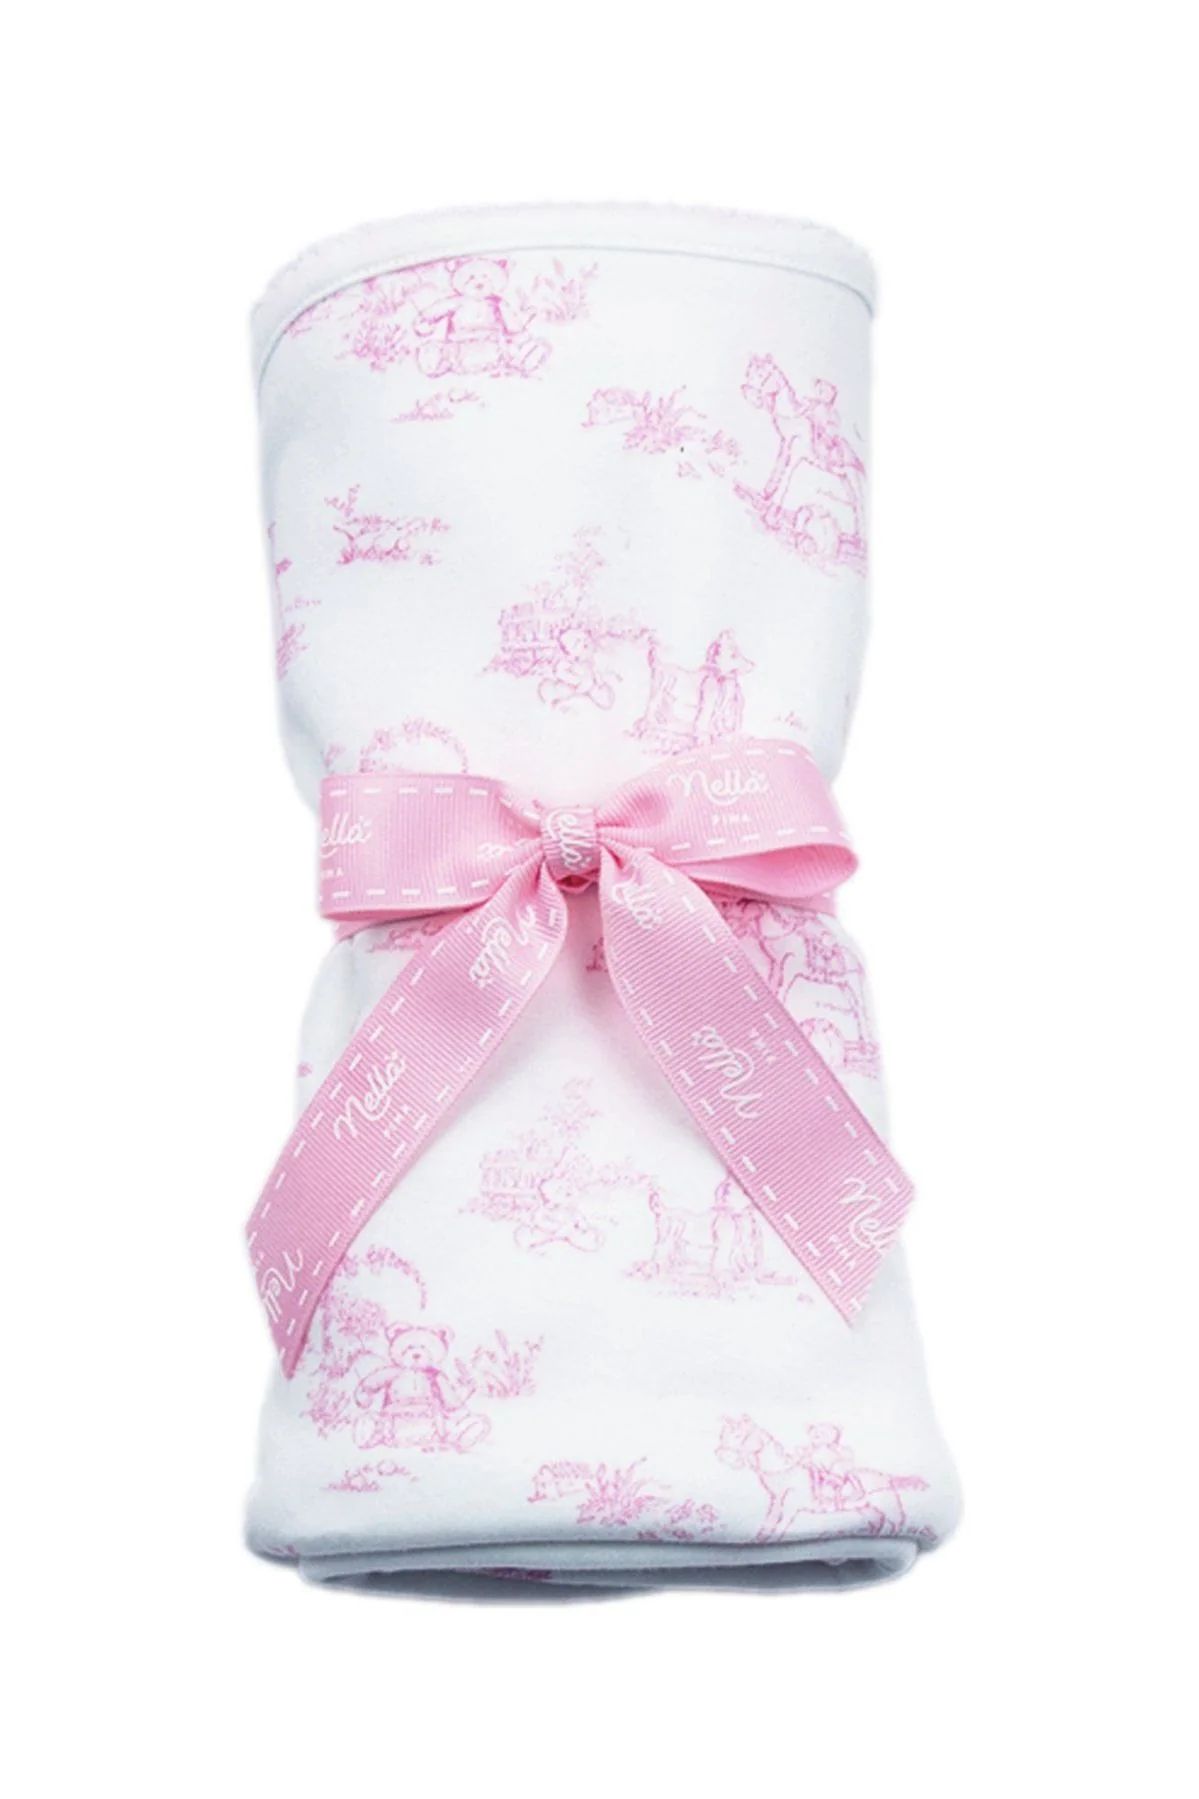 Toile Baby Blanket: Pink Teddy Bears | Loozieloo